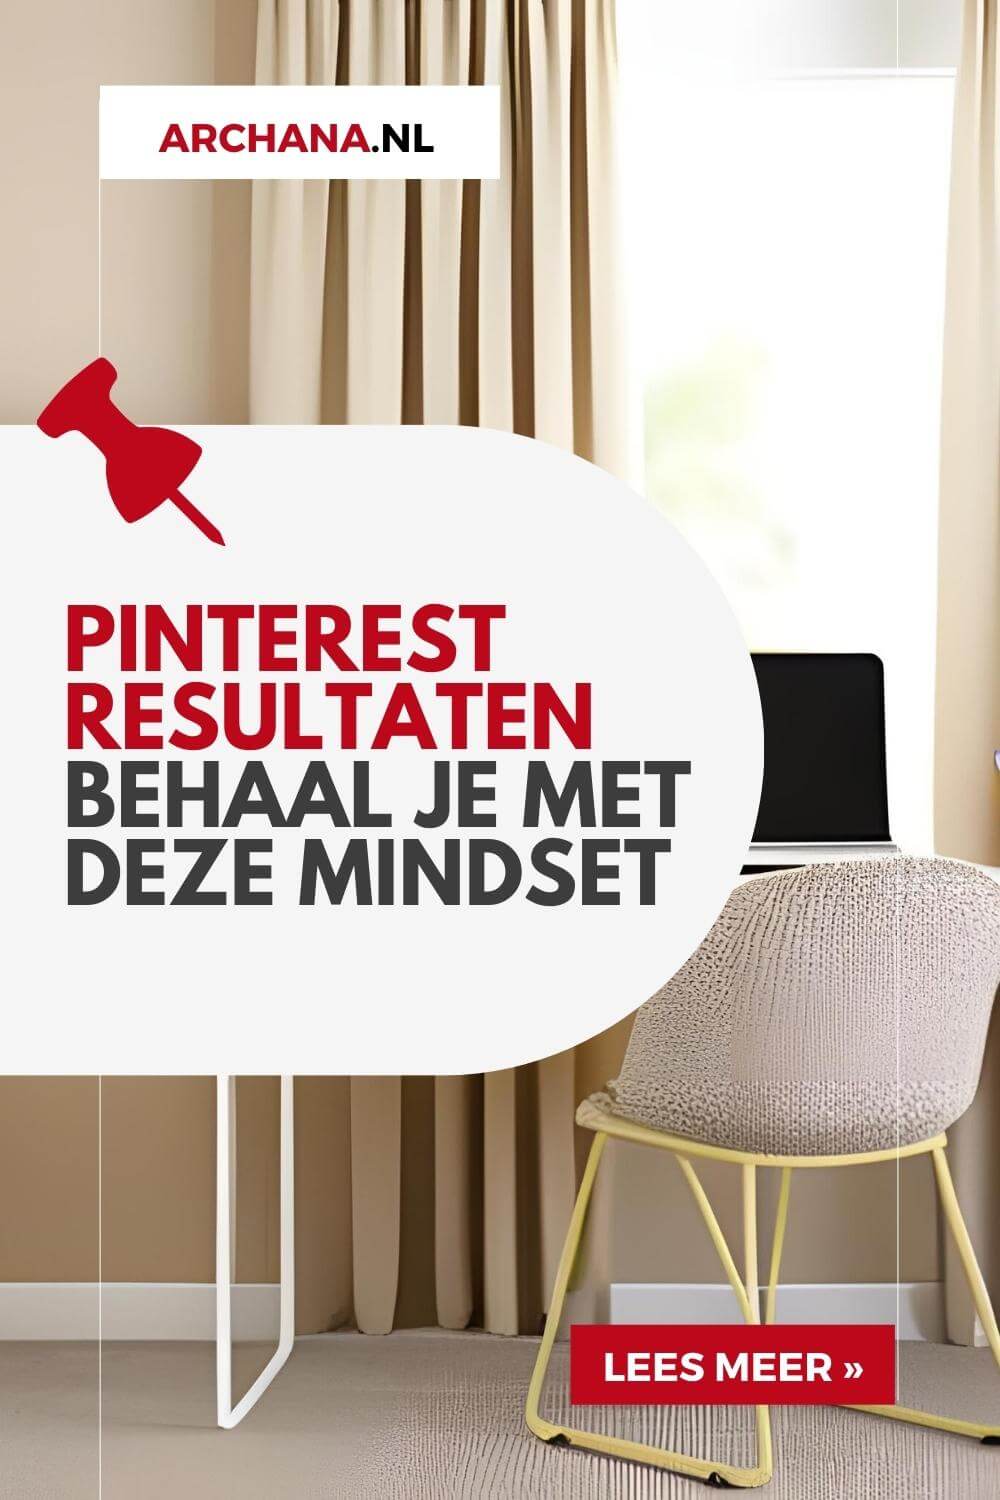 Pinterest resultaten behaal je met deze mindset - ARCHANA.NL